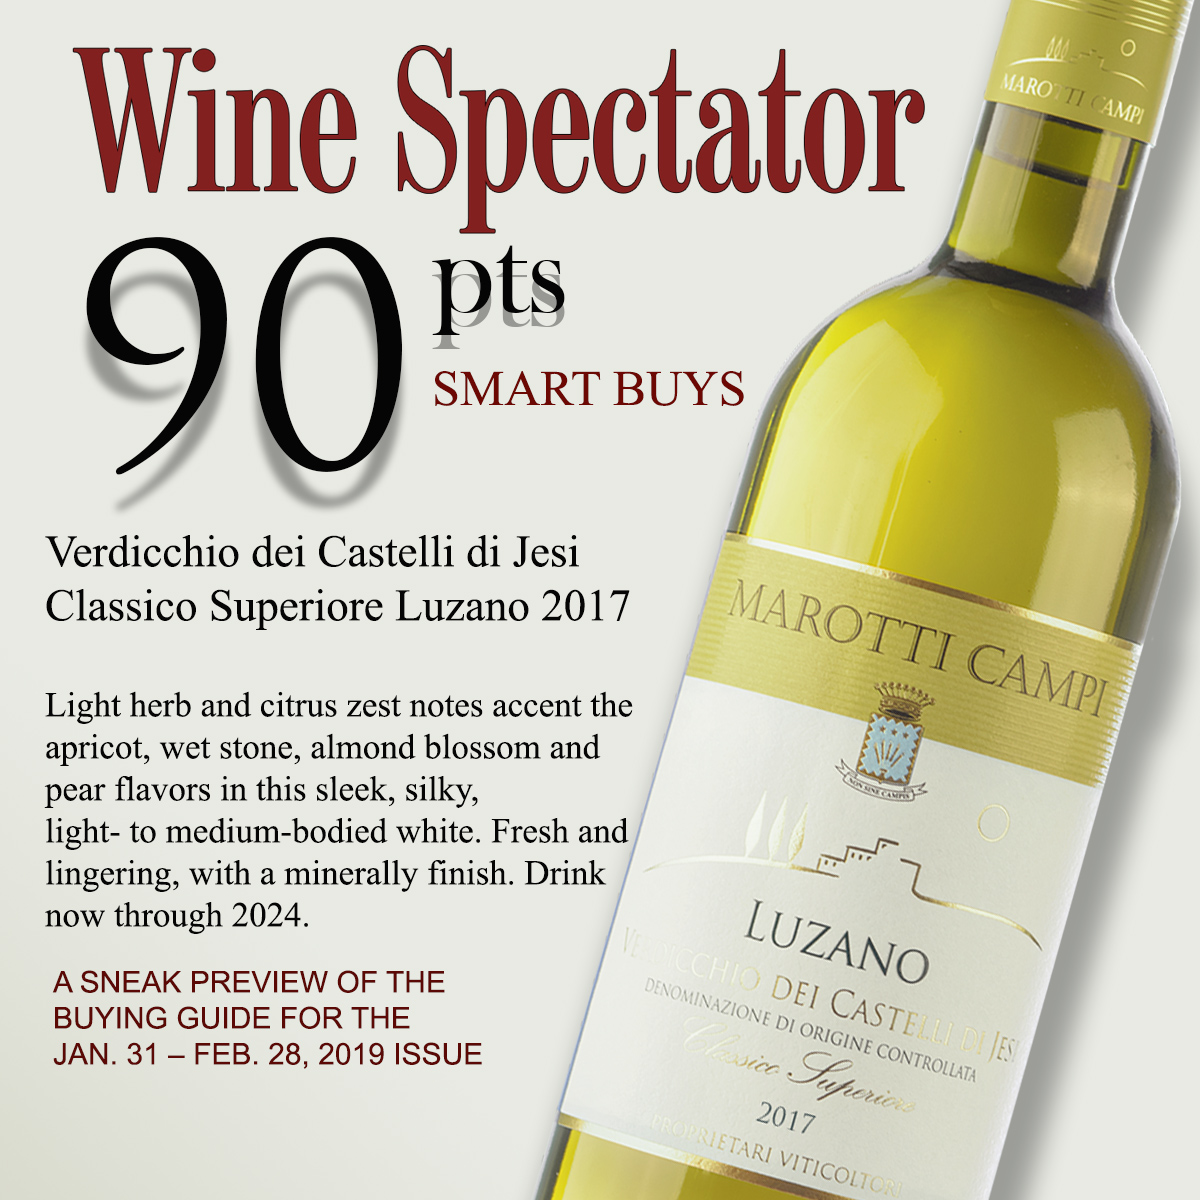 Wine Spectator Verdicchio Marotti Campi Luzano 90 pts